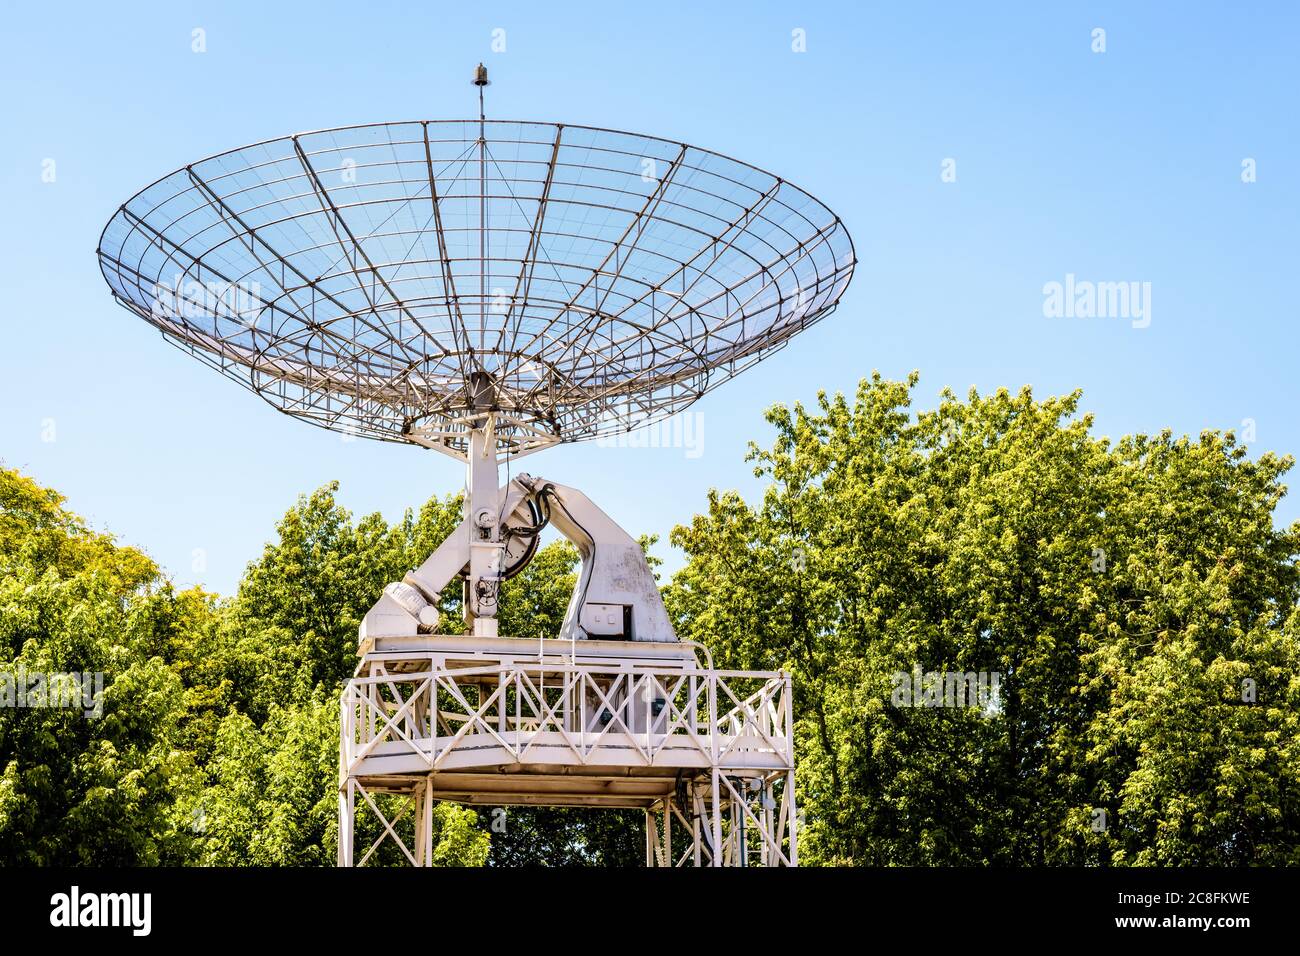 Le radiotélescope de 10 mètres dans le parc de la Villette à Paris, en France, contre le ciel bleu. Banque D'Images